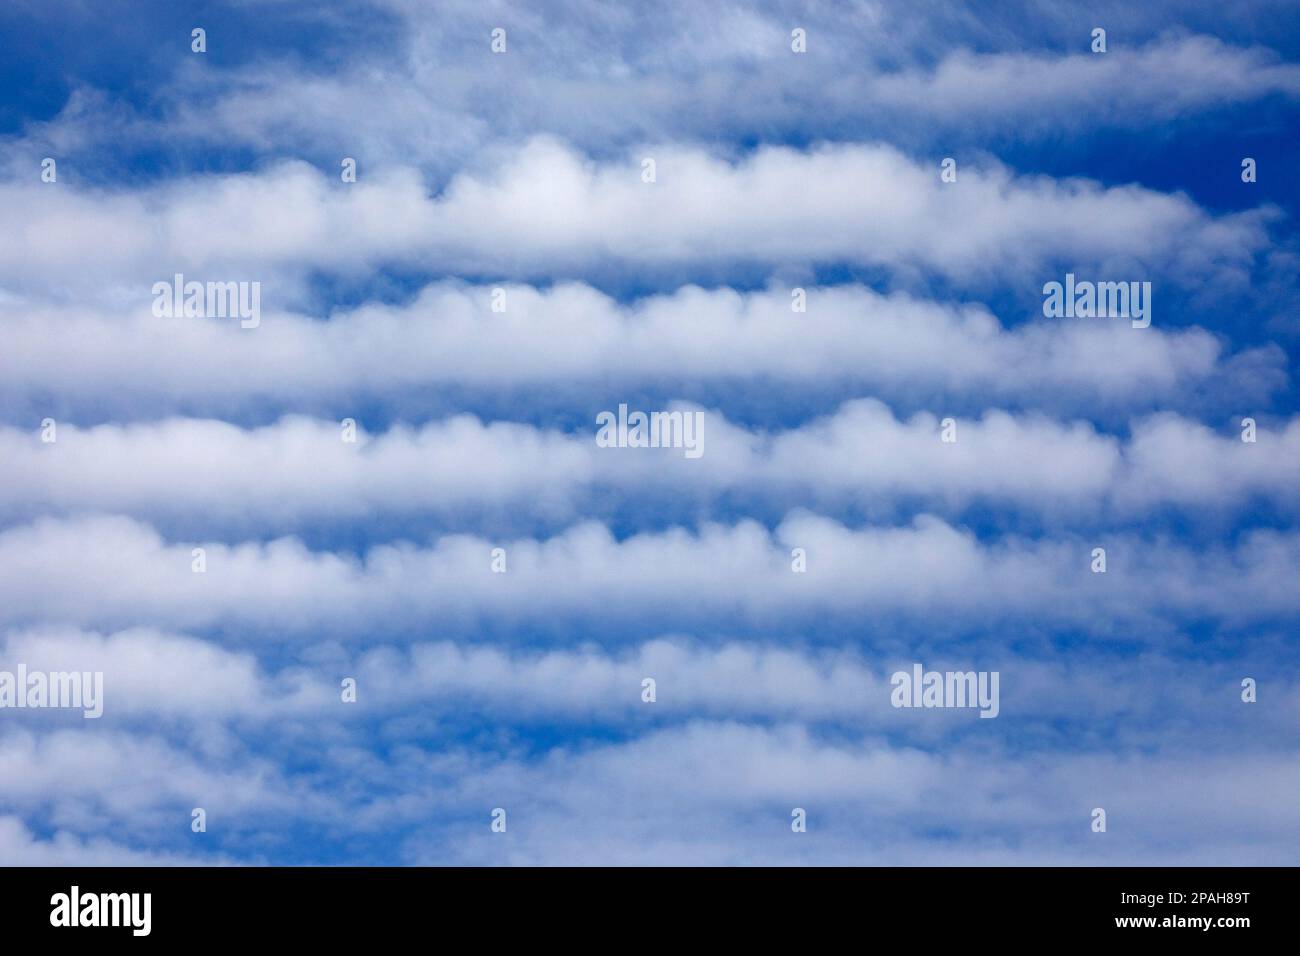 Cloud Streets, un type de formation de nuages également connu sous le nom de rouleaux convectifs horizontaux, dans le ciel bleu. Calgary, Alberta, Canada Banque D'Images